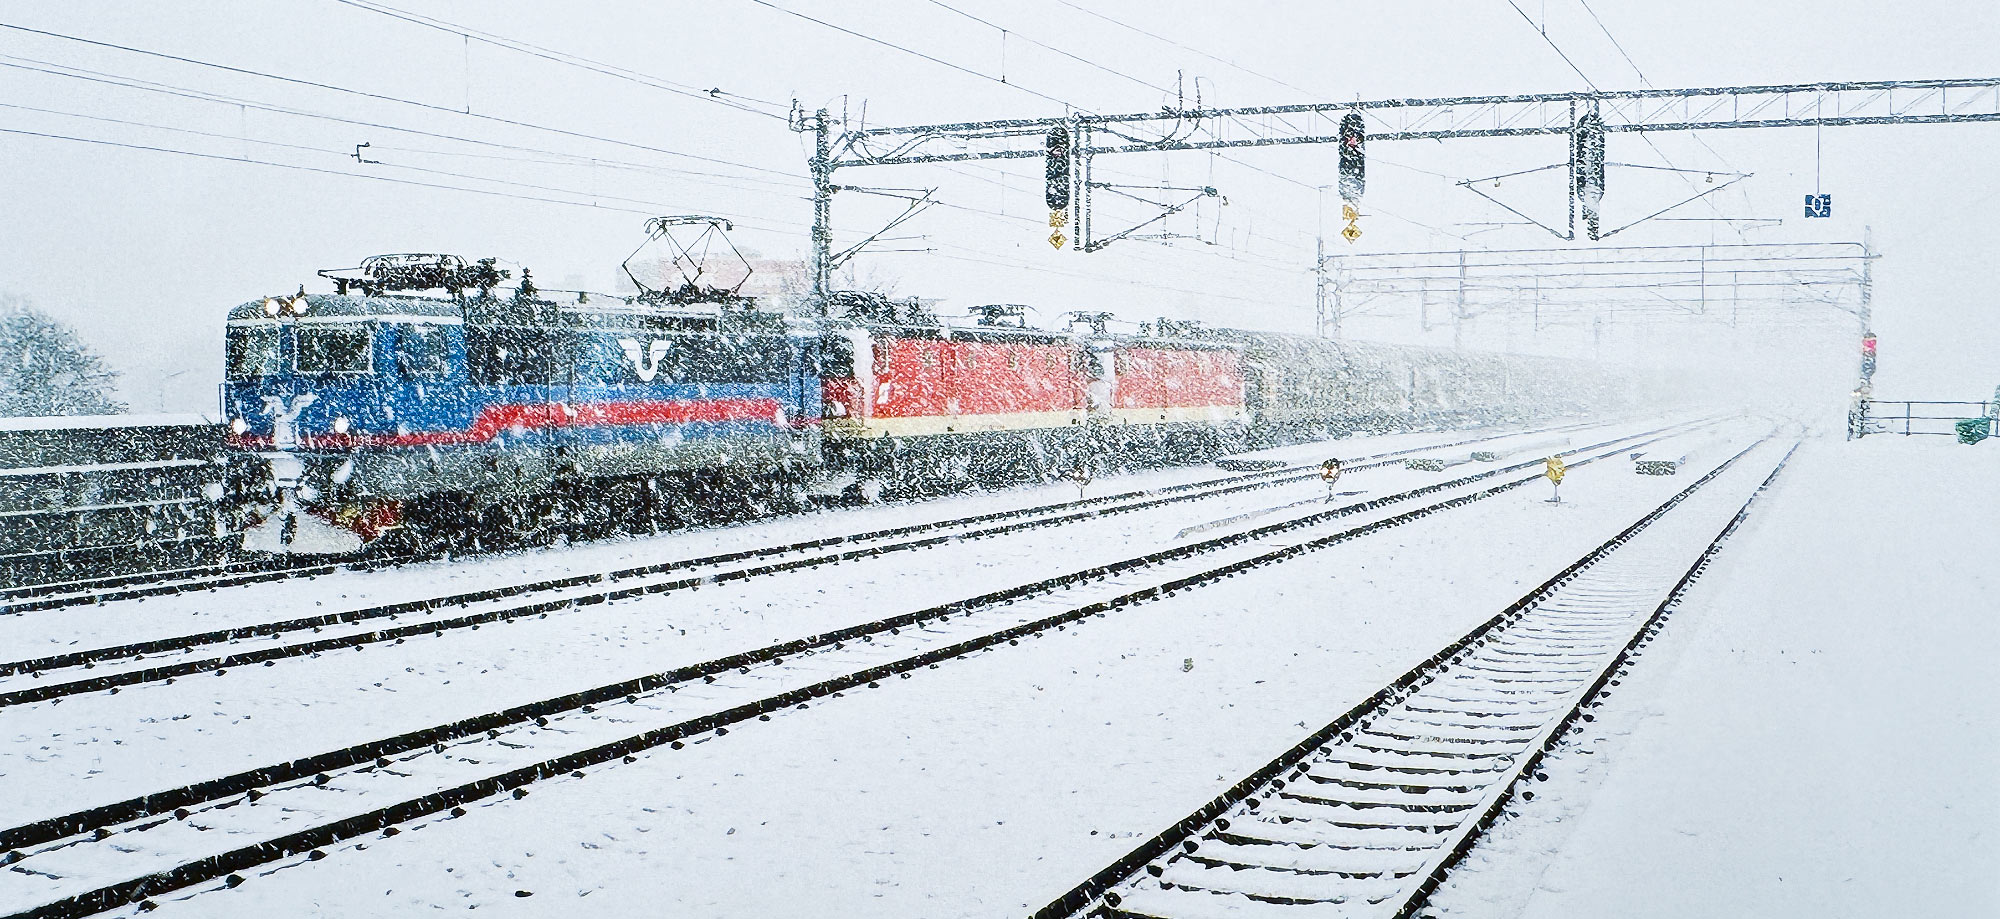 Bild: Rc4 1139 med två 1043-lok i transport i Malmö 28 december 2001